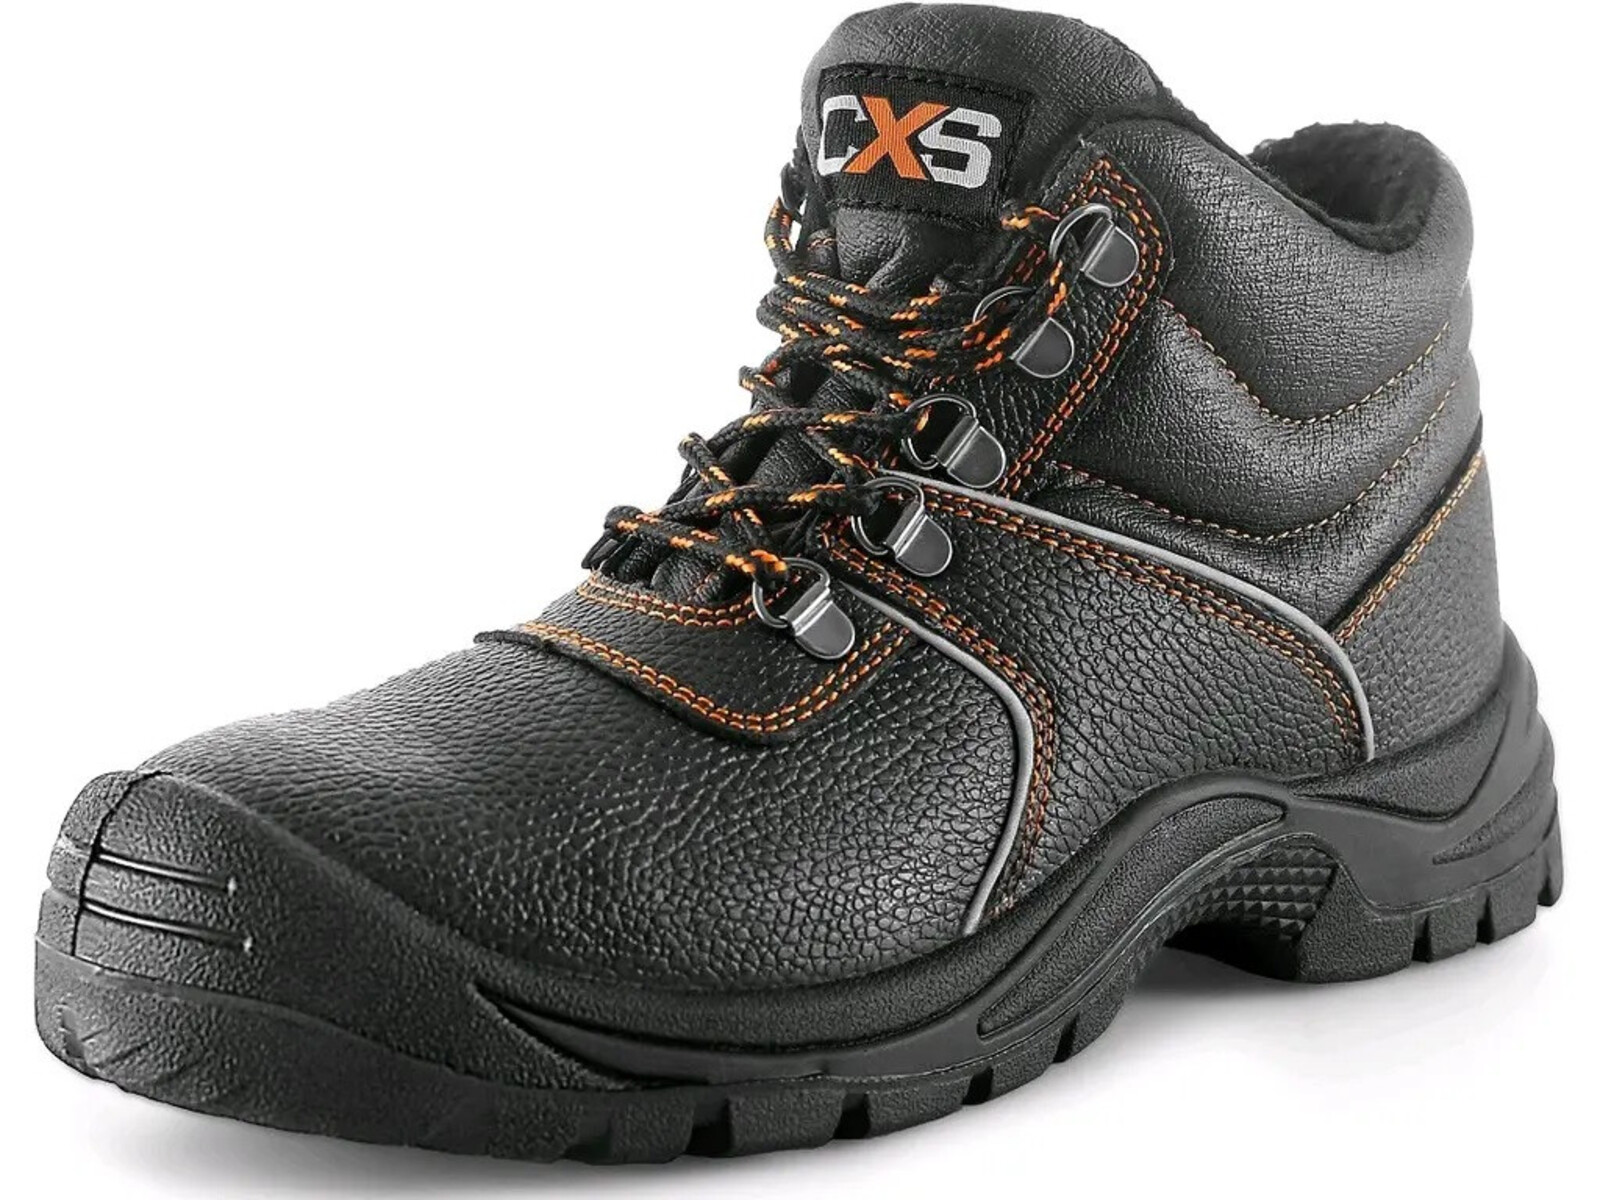 Zimná bezpečnostná členková obuv CXS Stone Apatit Winter S3 SRC - veľkosť: 50, farba: čierna/oranžová